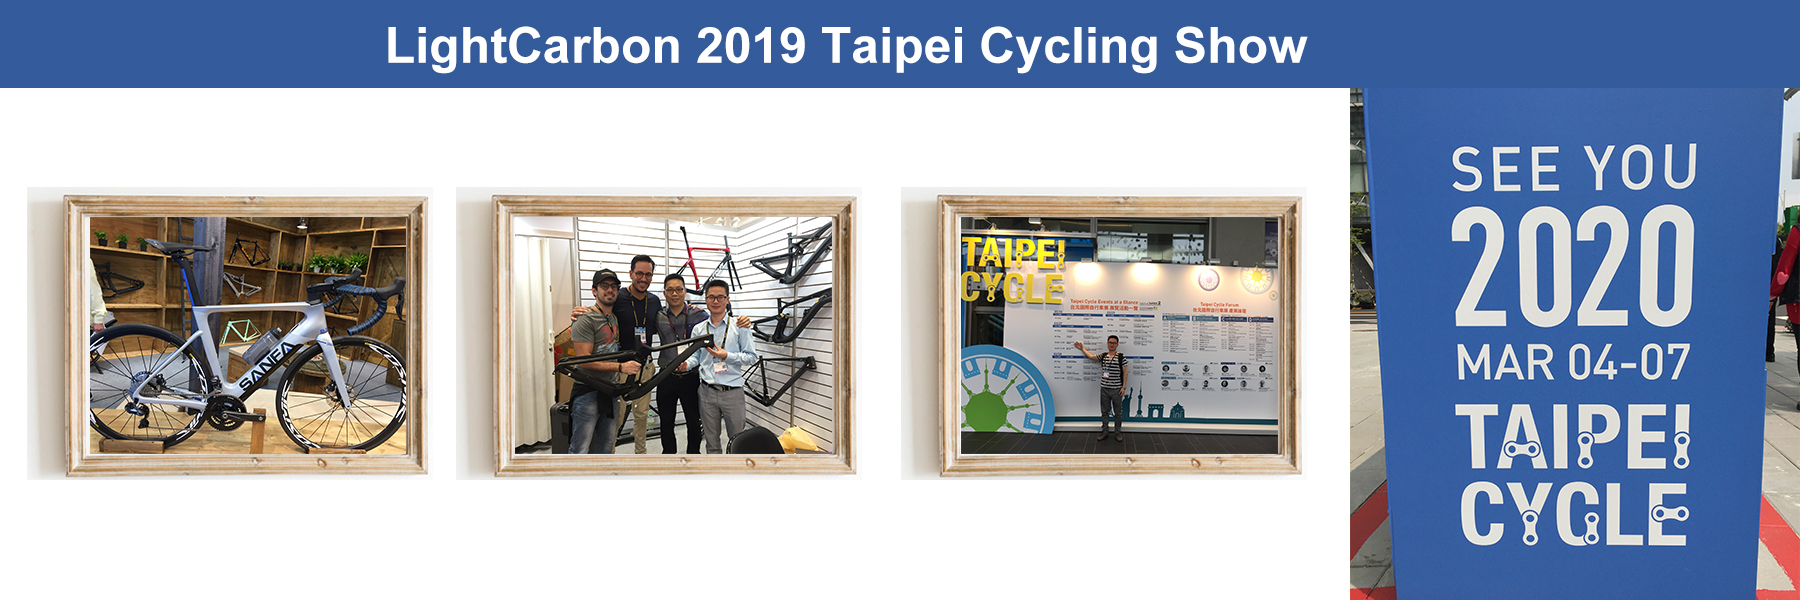 Leichtkarbon-Radsportmesse 2019 in Taipeh